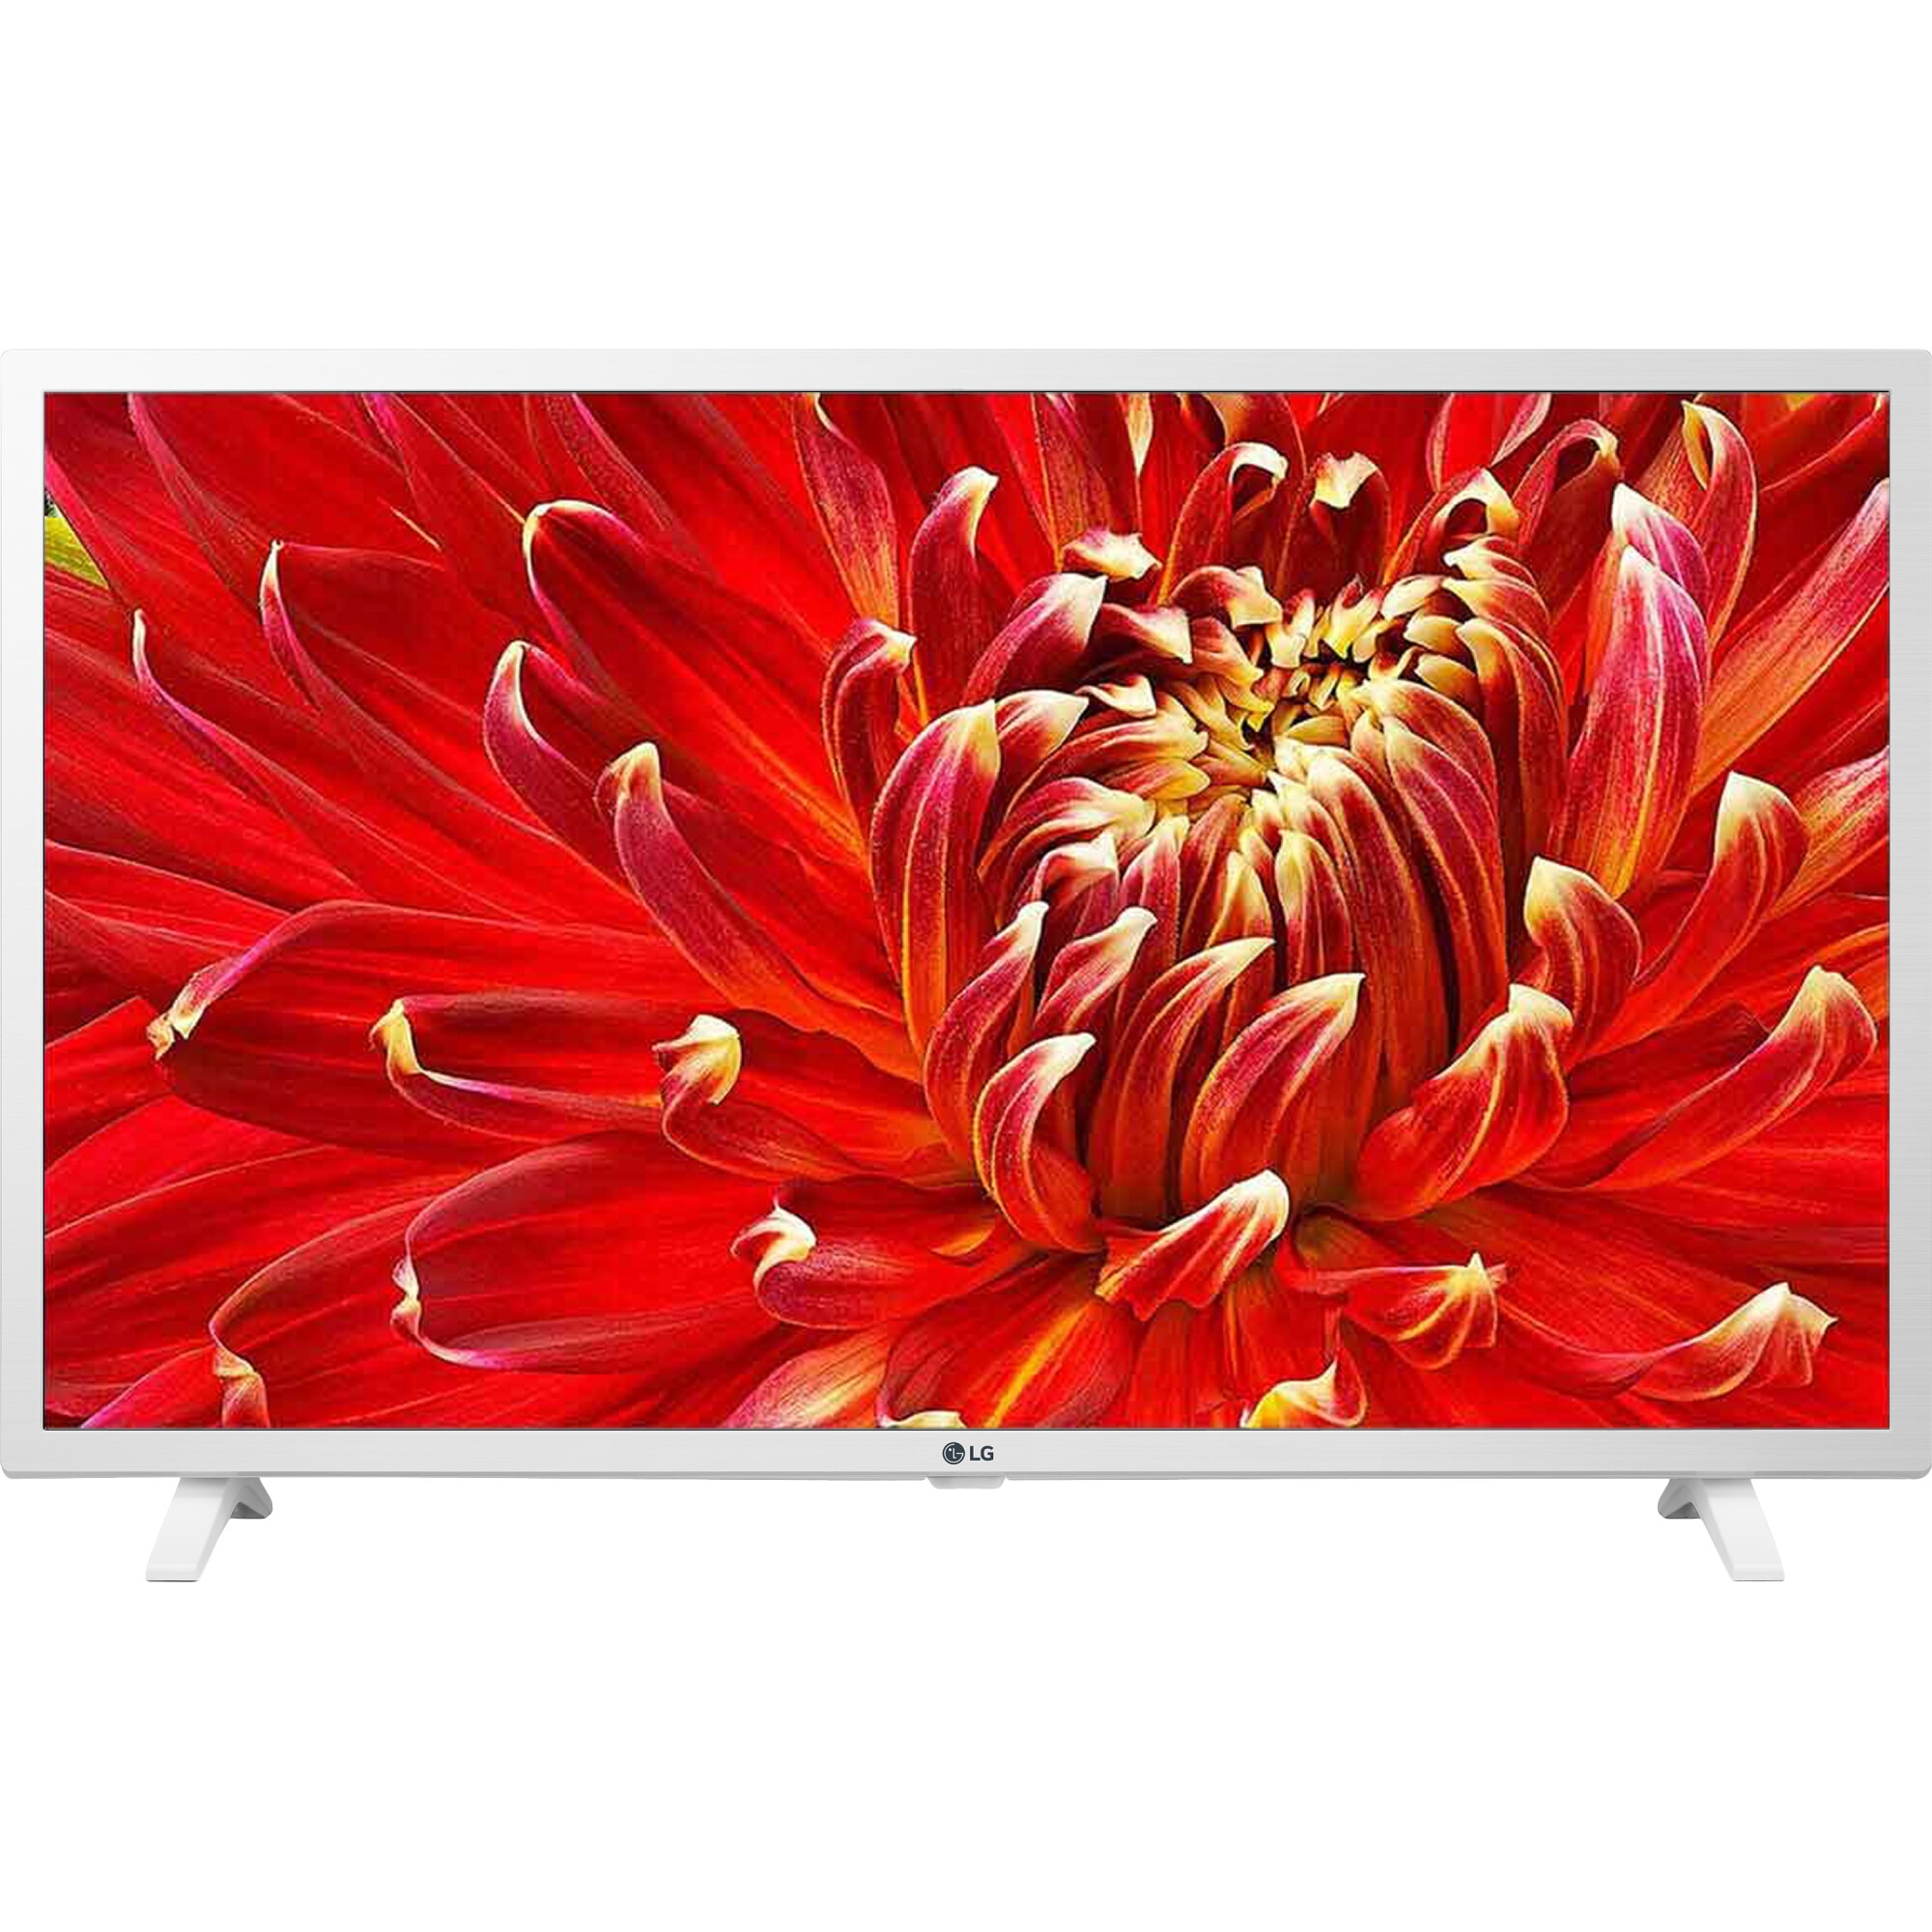 Купить телевизор смарт дешевле. Телевизор LG 32lm6350. Телевизор LG 32lm6350 32" (2019). Телевизор LG 32lm6380plc. Телевизор LG 32lm6390 32" (2019).